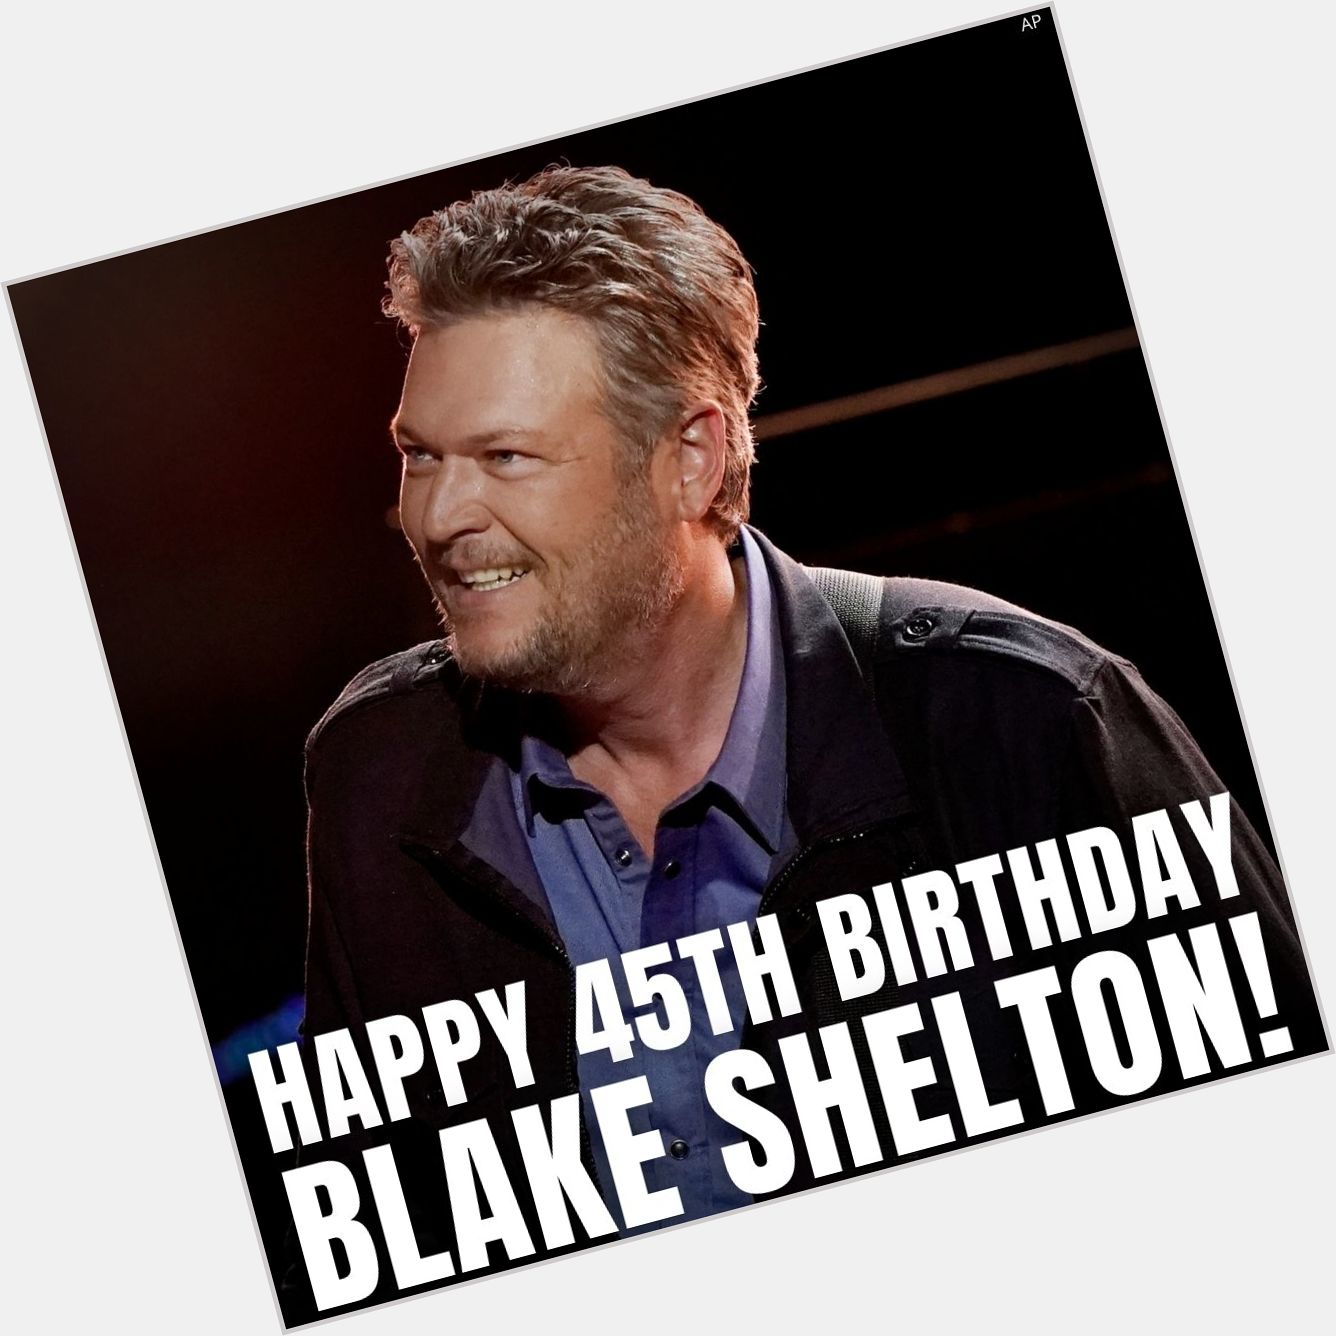 Happy birthday Blake Shelton! 